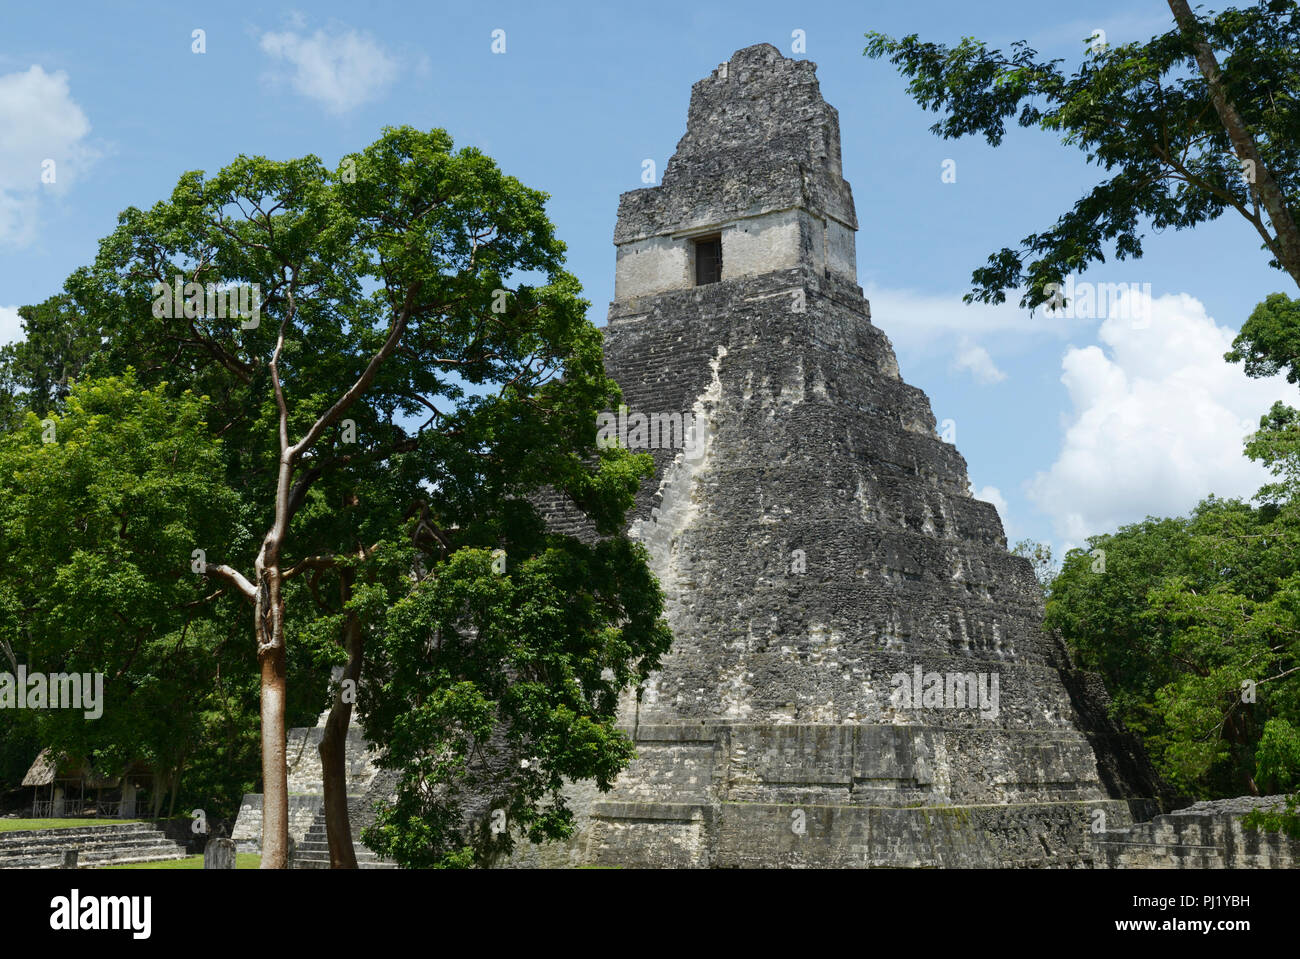 Las ruinas mayas de Tikal, Guatemala, con el templo 1 Foto de stock